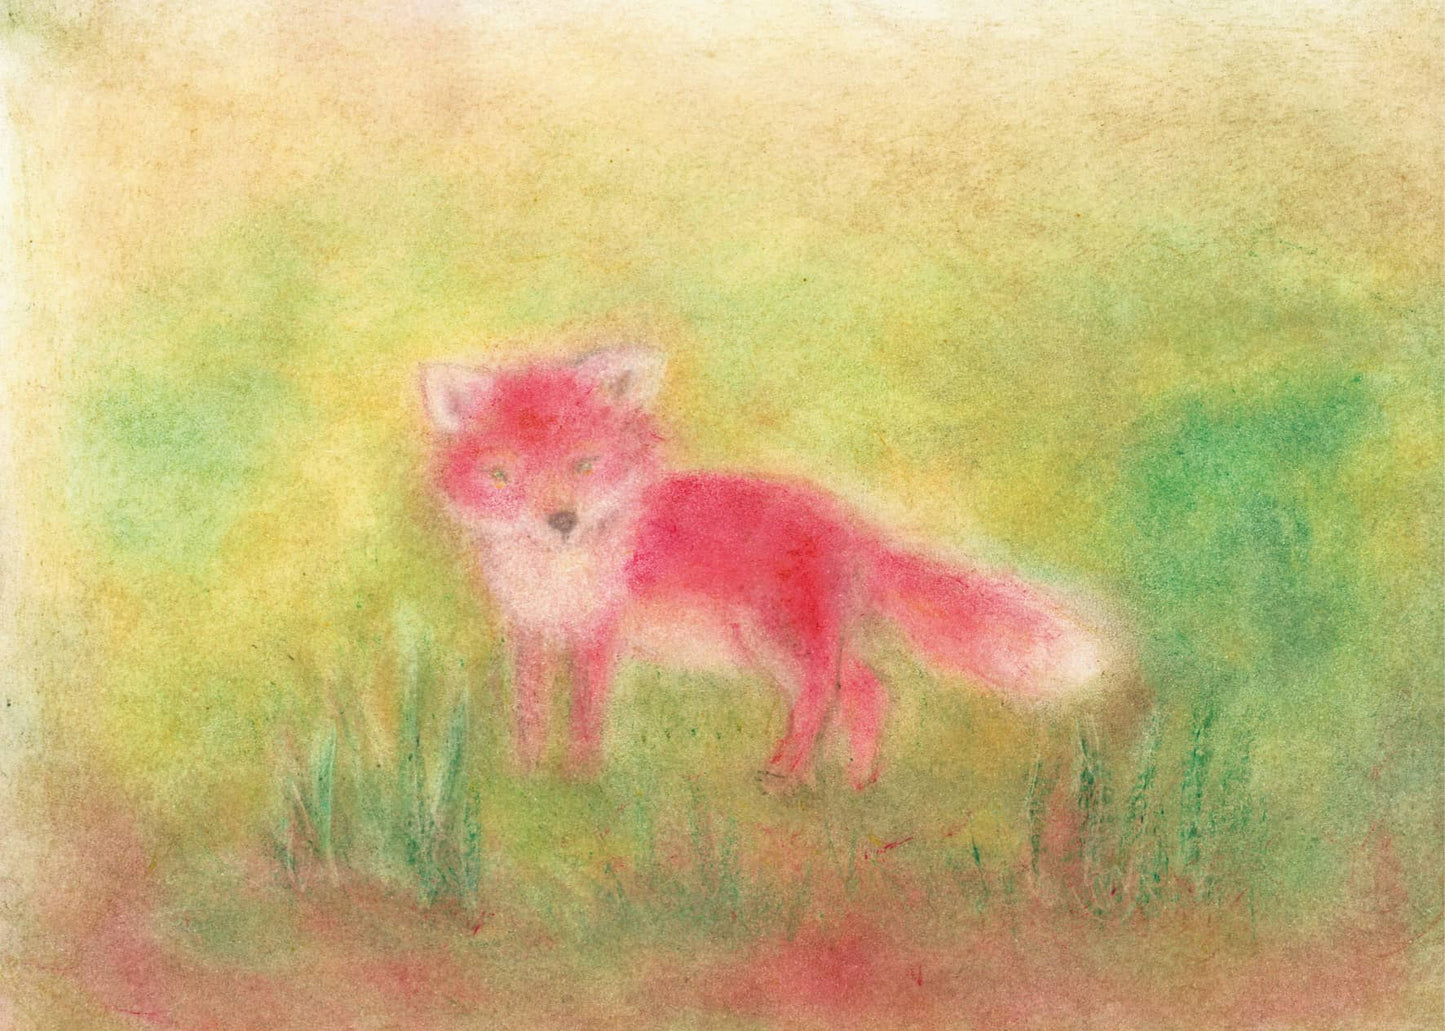 Seccorell-Postkarte "Fuchs" mit einer charmanten Darstellung eines jungen Fuchses in sanfter Naturkulisse.